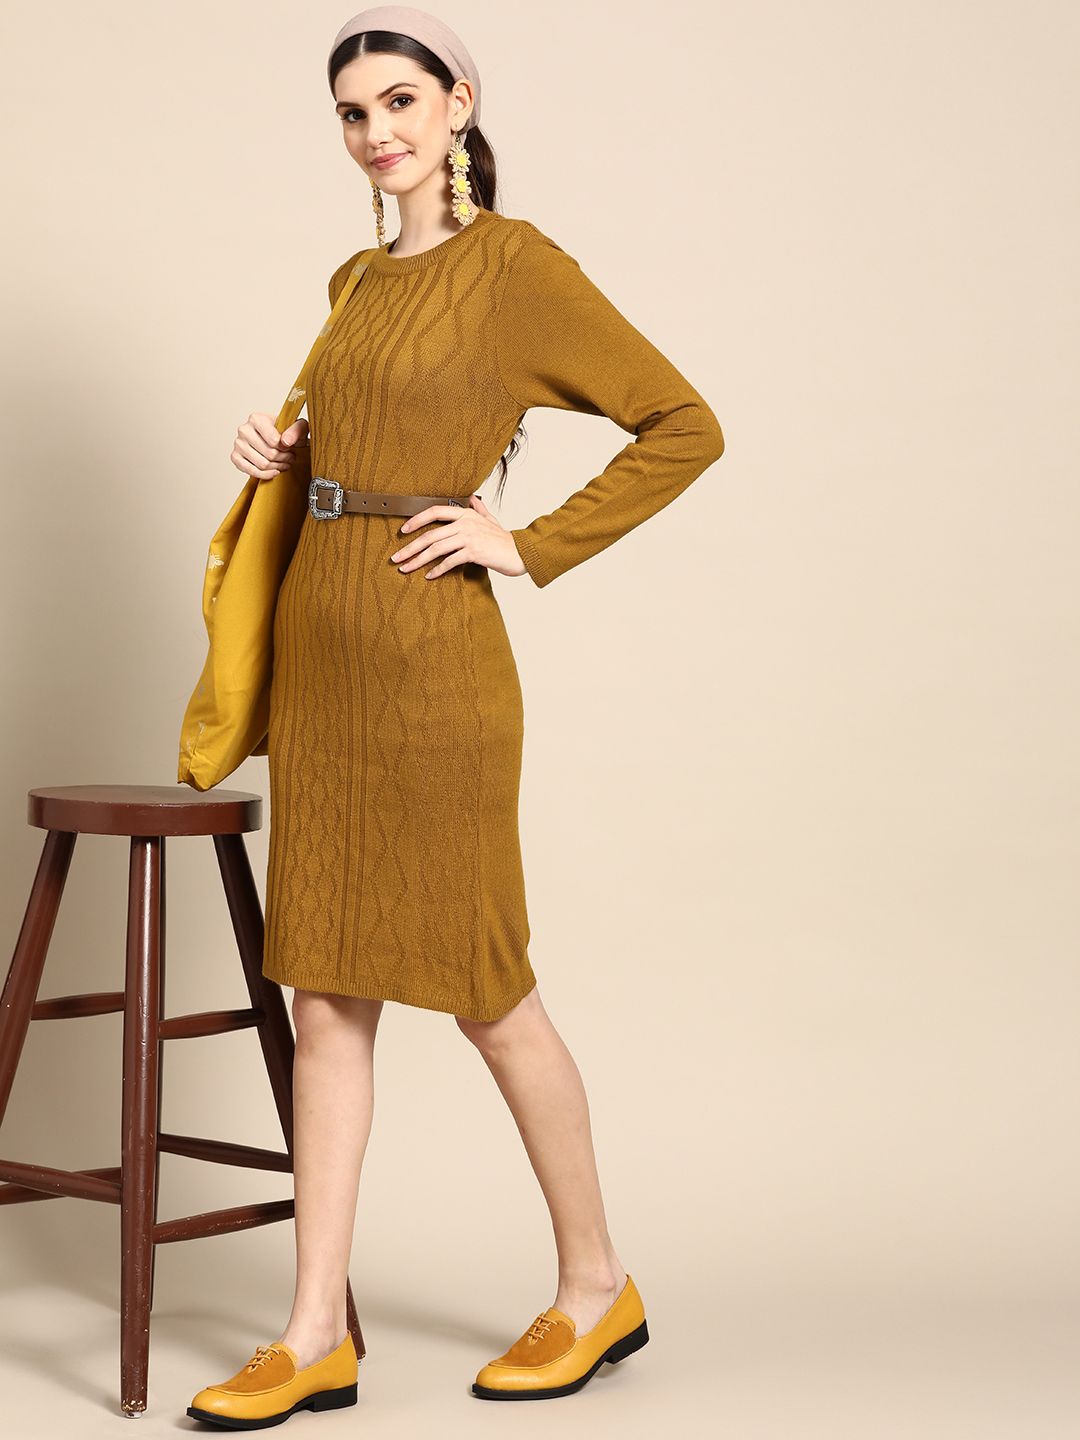 Sangria Mustard Yellow Ethnic Sheath Sweater Dress Price in India